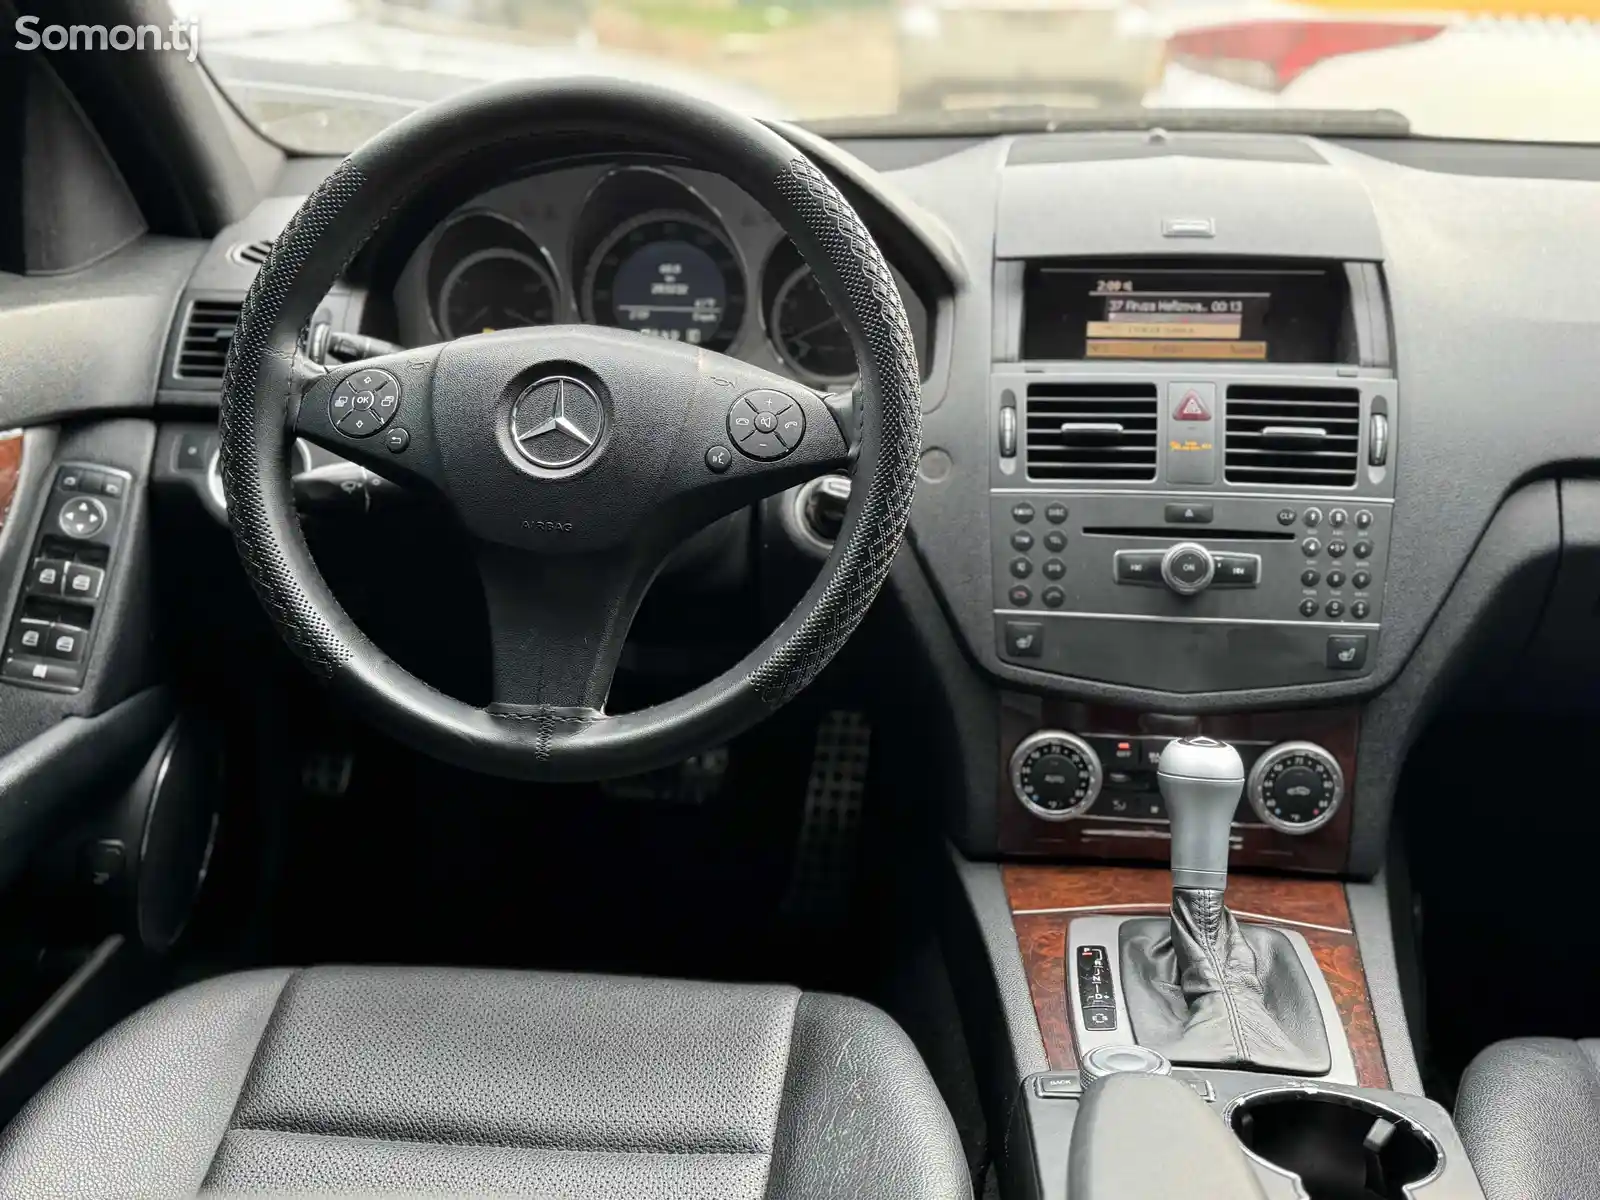 Mercedes-Benz C class, 2011-13